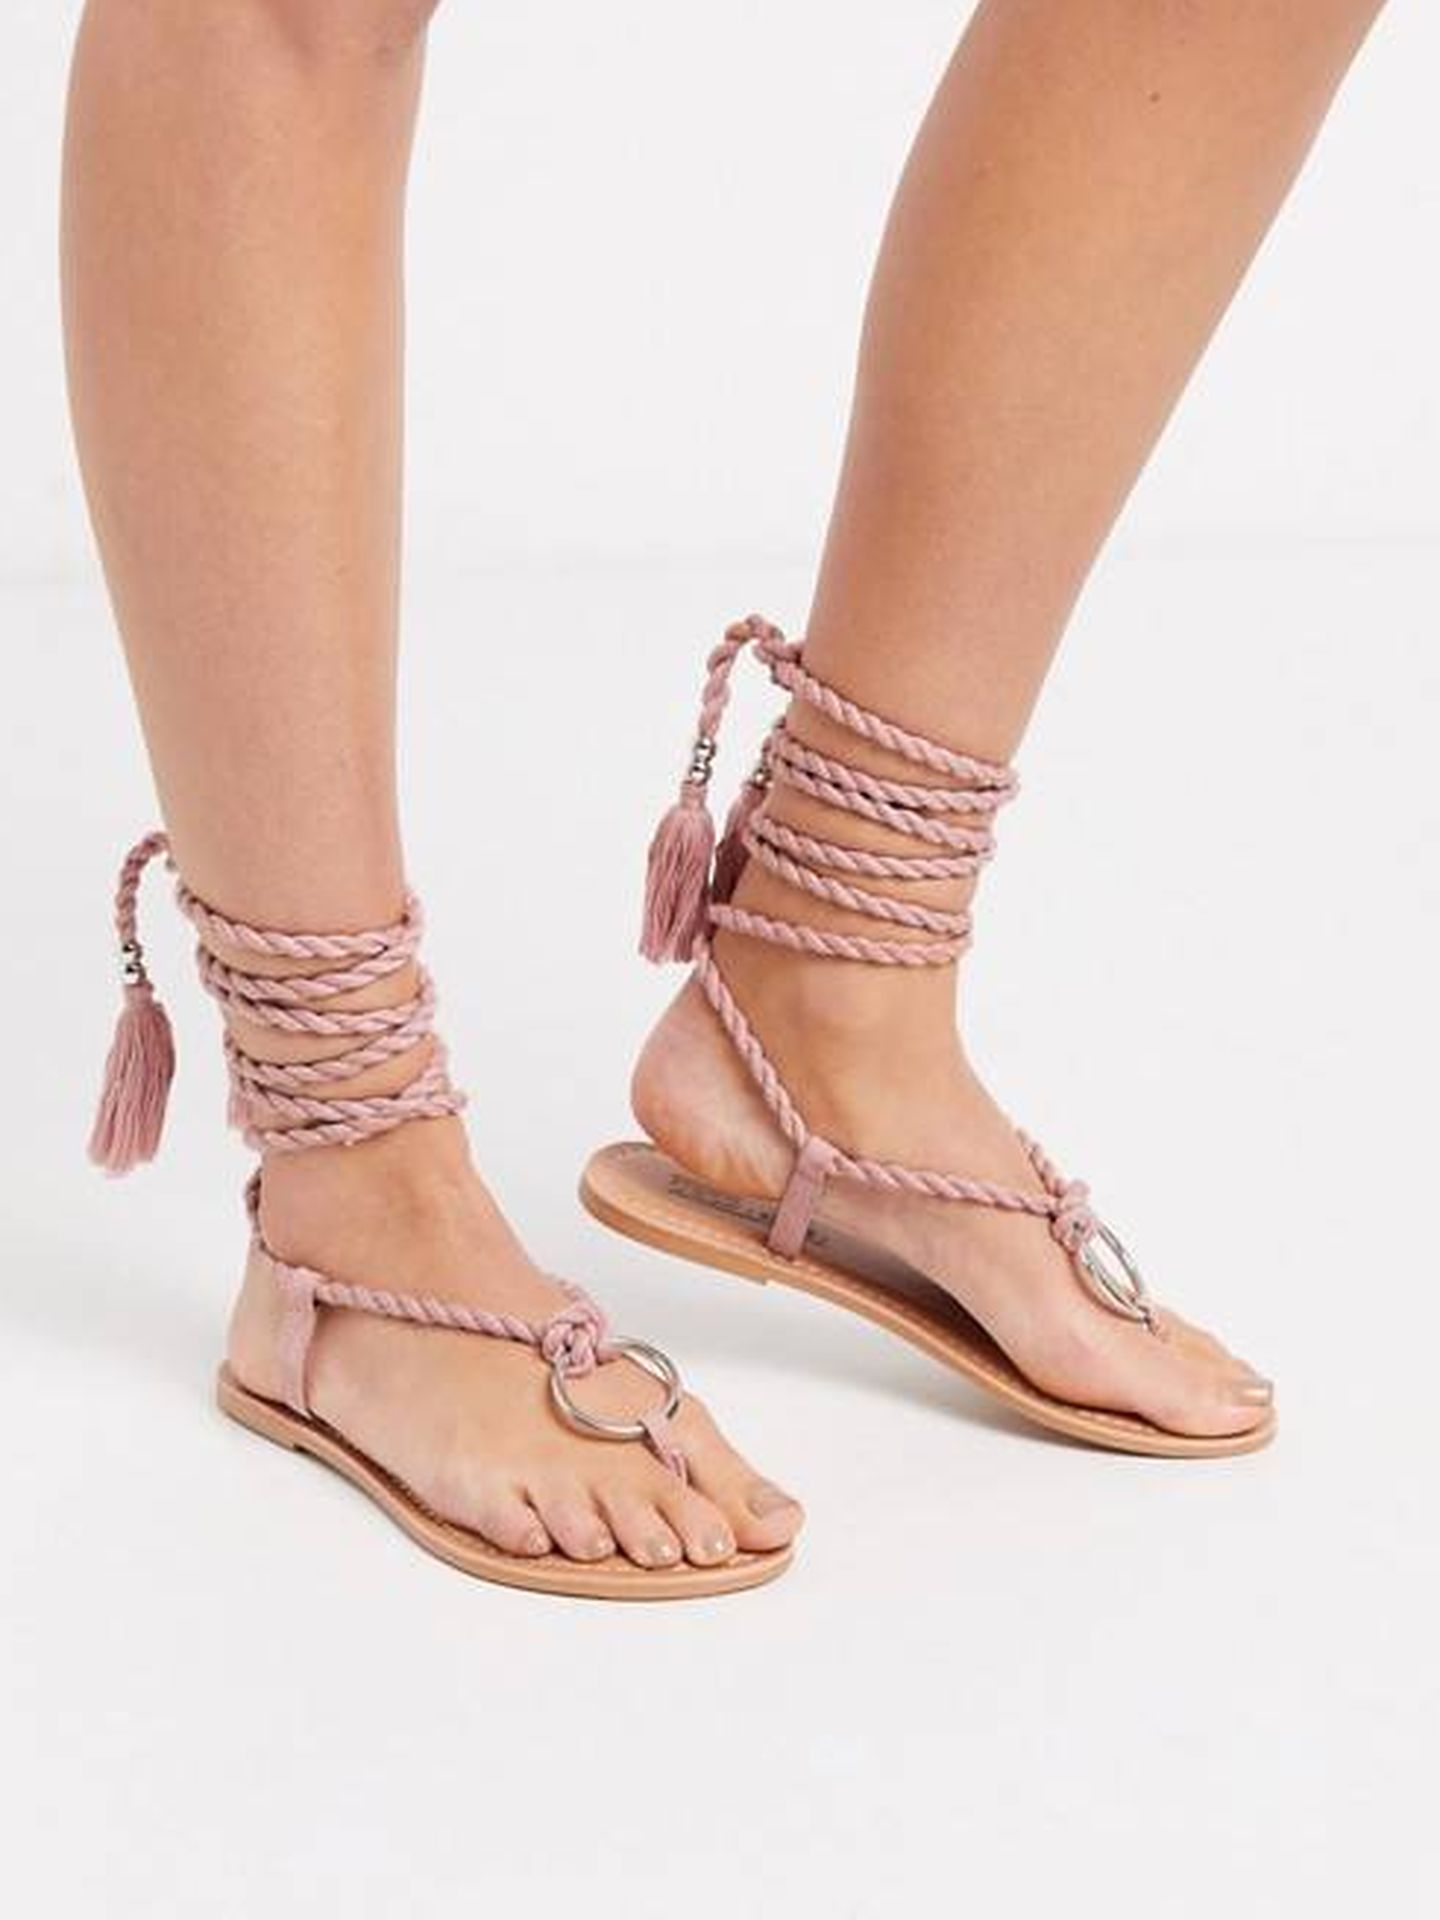 Las sandalias romanas de Asos. (Cortesía)